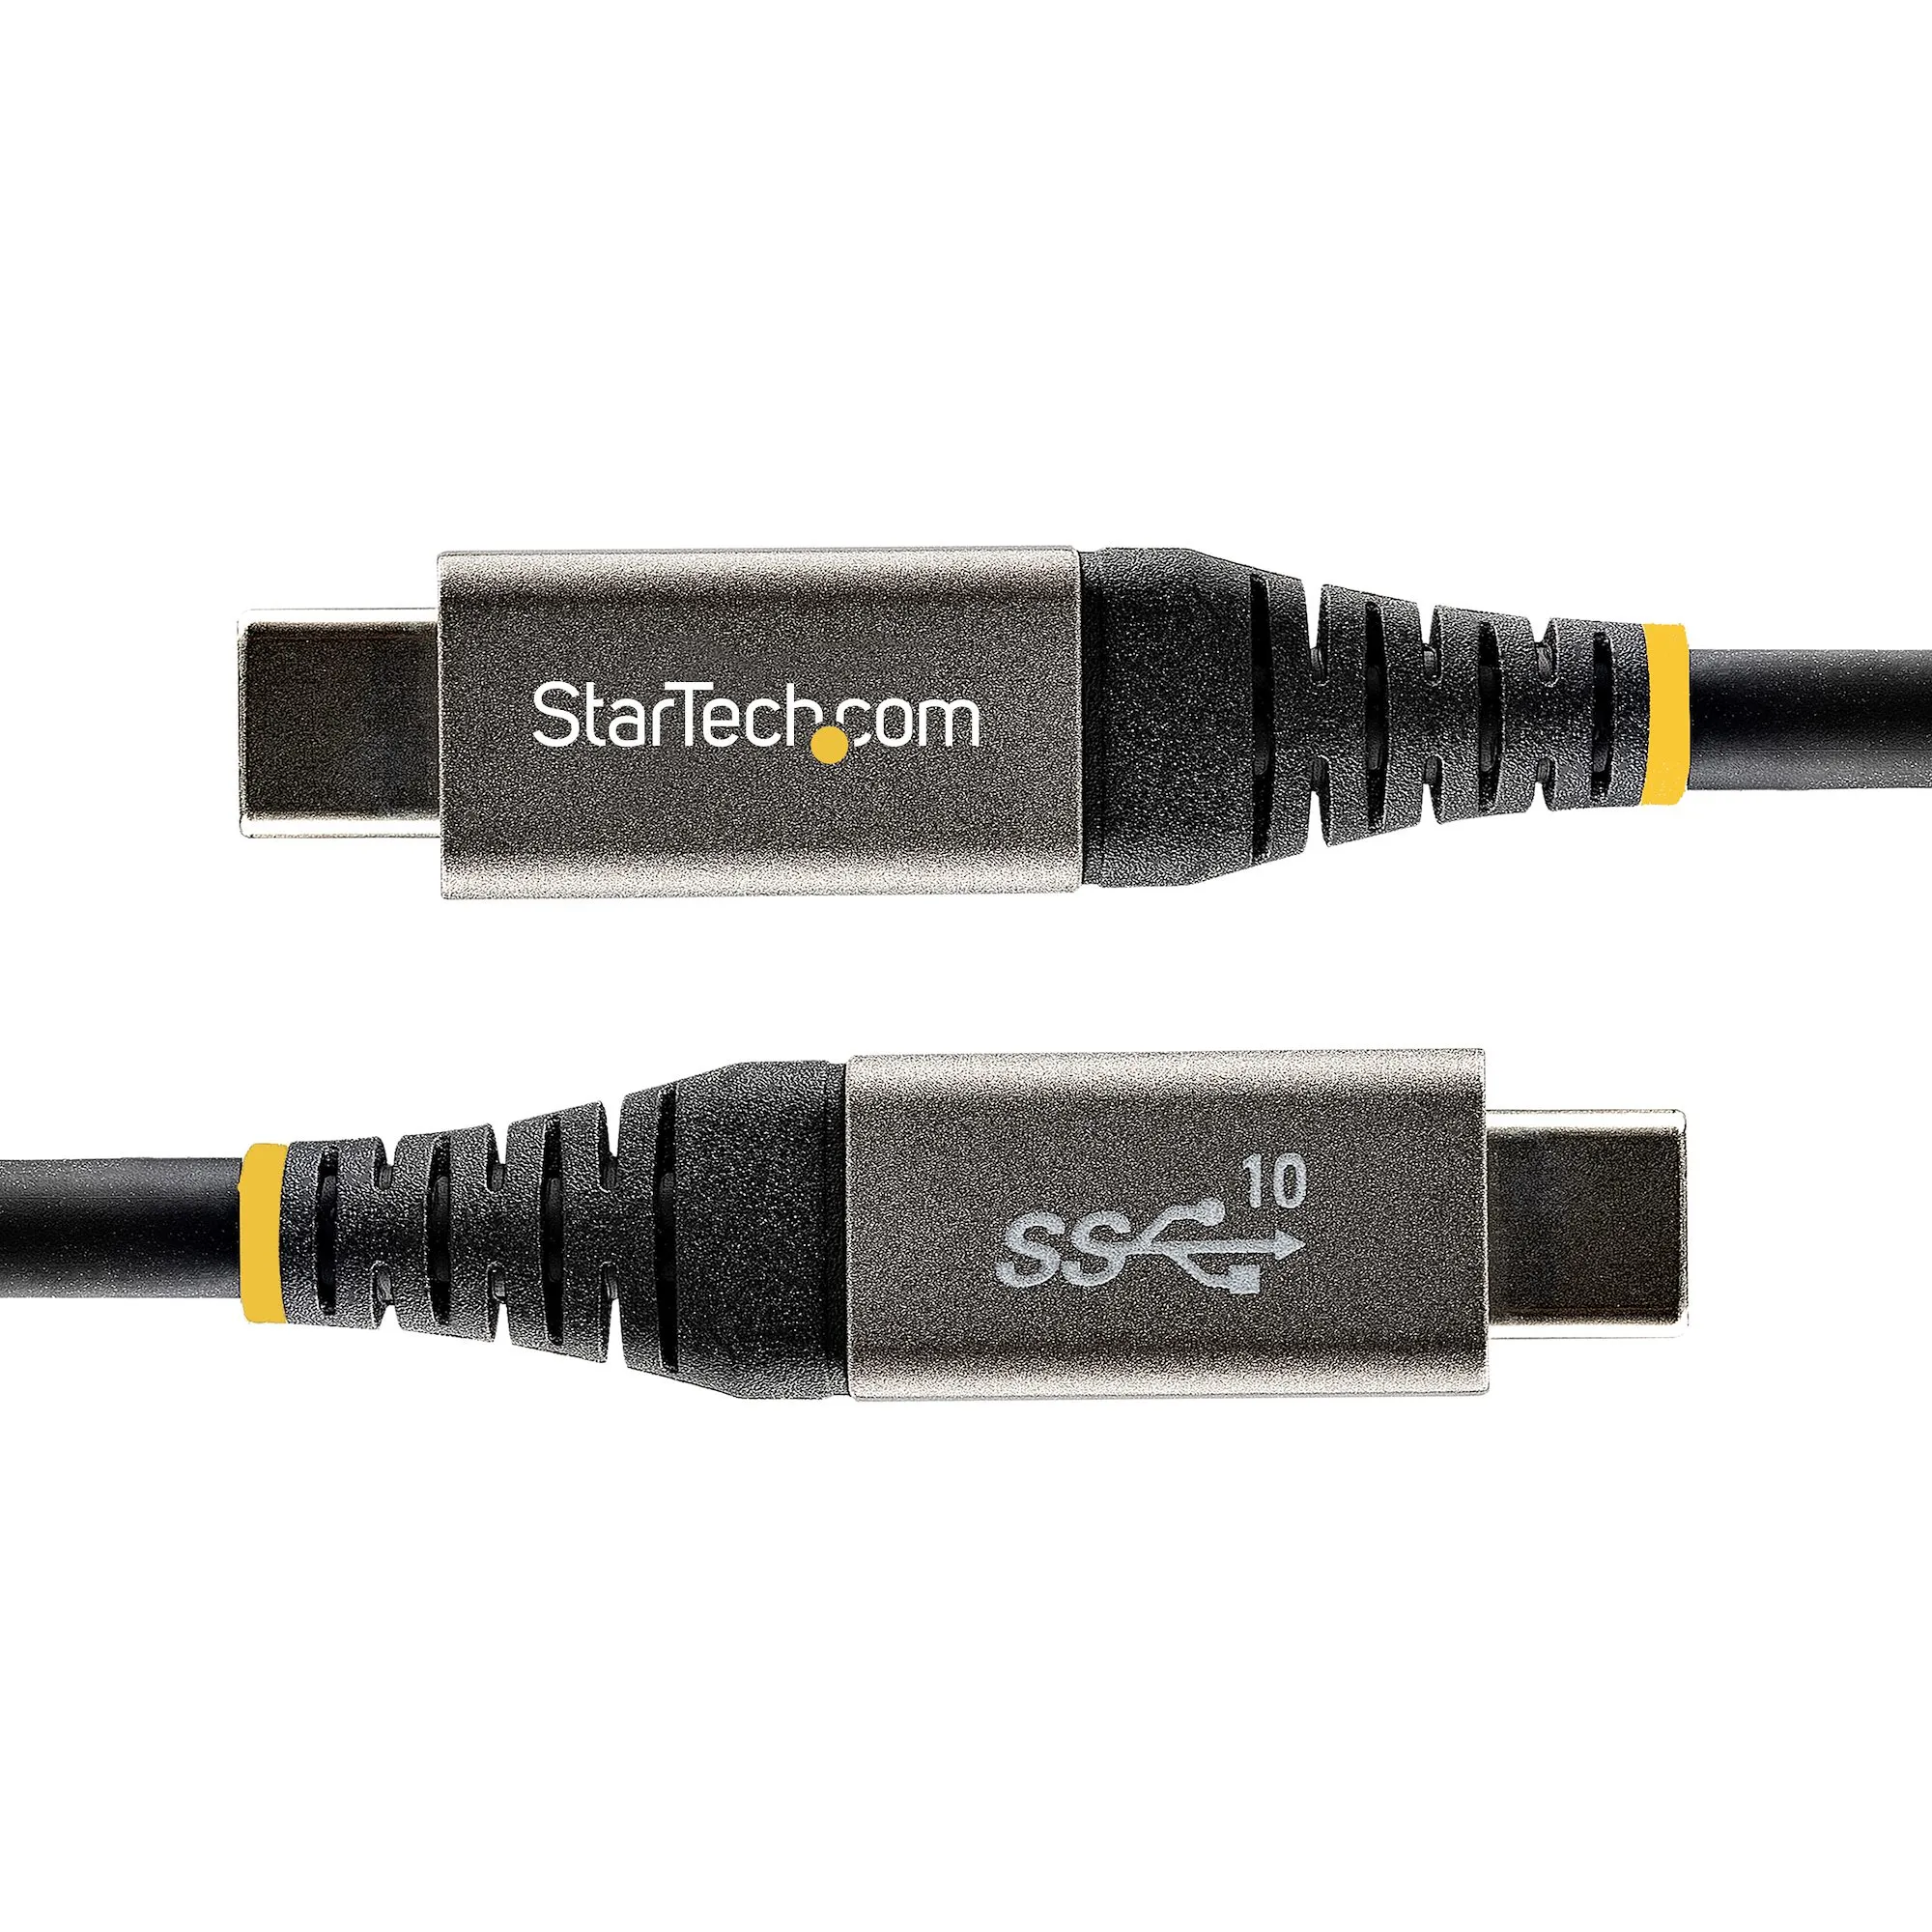 Achat StarTech.com Câble USB C 10Gbps 50cm - Certifié sur hello RSE - visuel 9